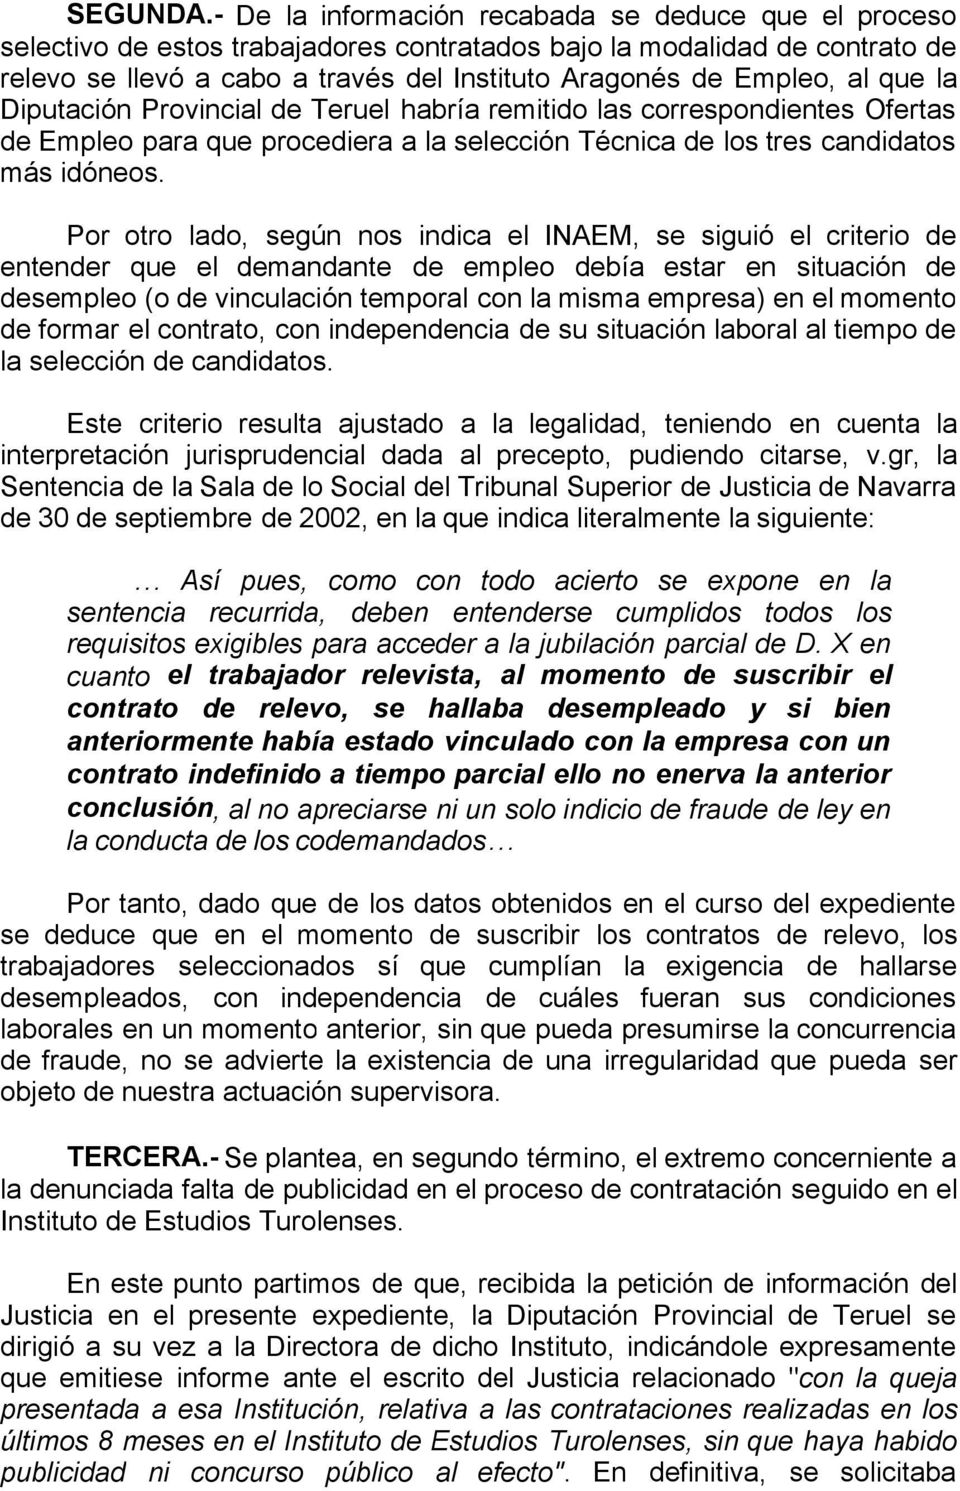 que la Diputación Provincial de Teruel habría remitido las correspondientes Ofertas de Empleo para que procediera a la selección Técnica de los tres candidatos más idóneos.